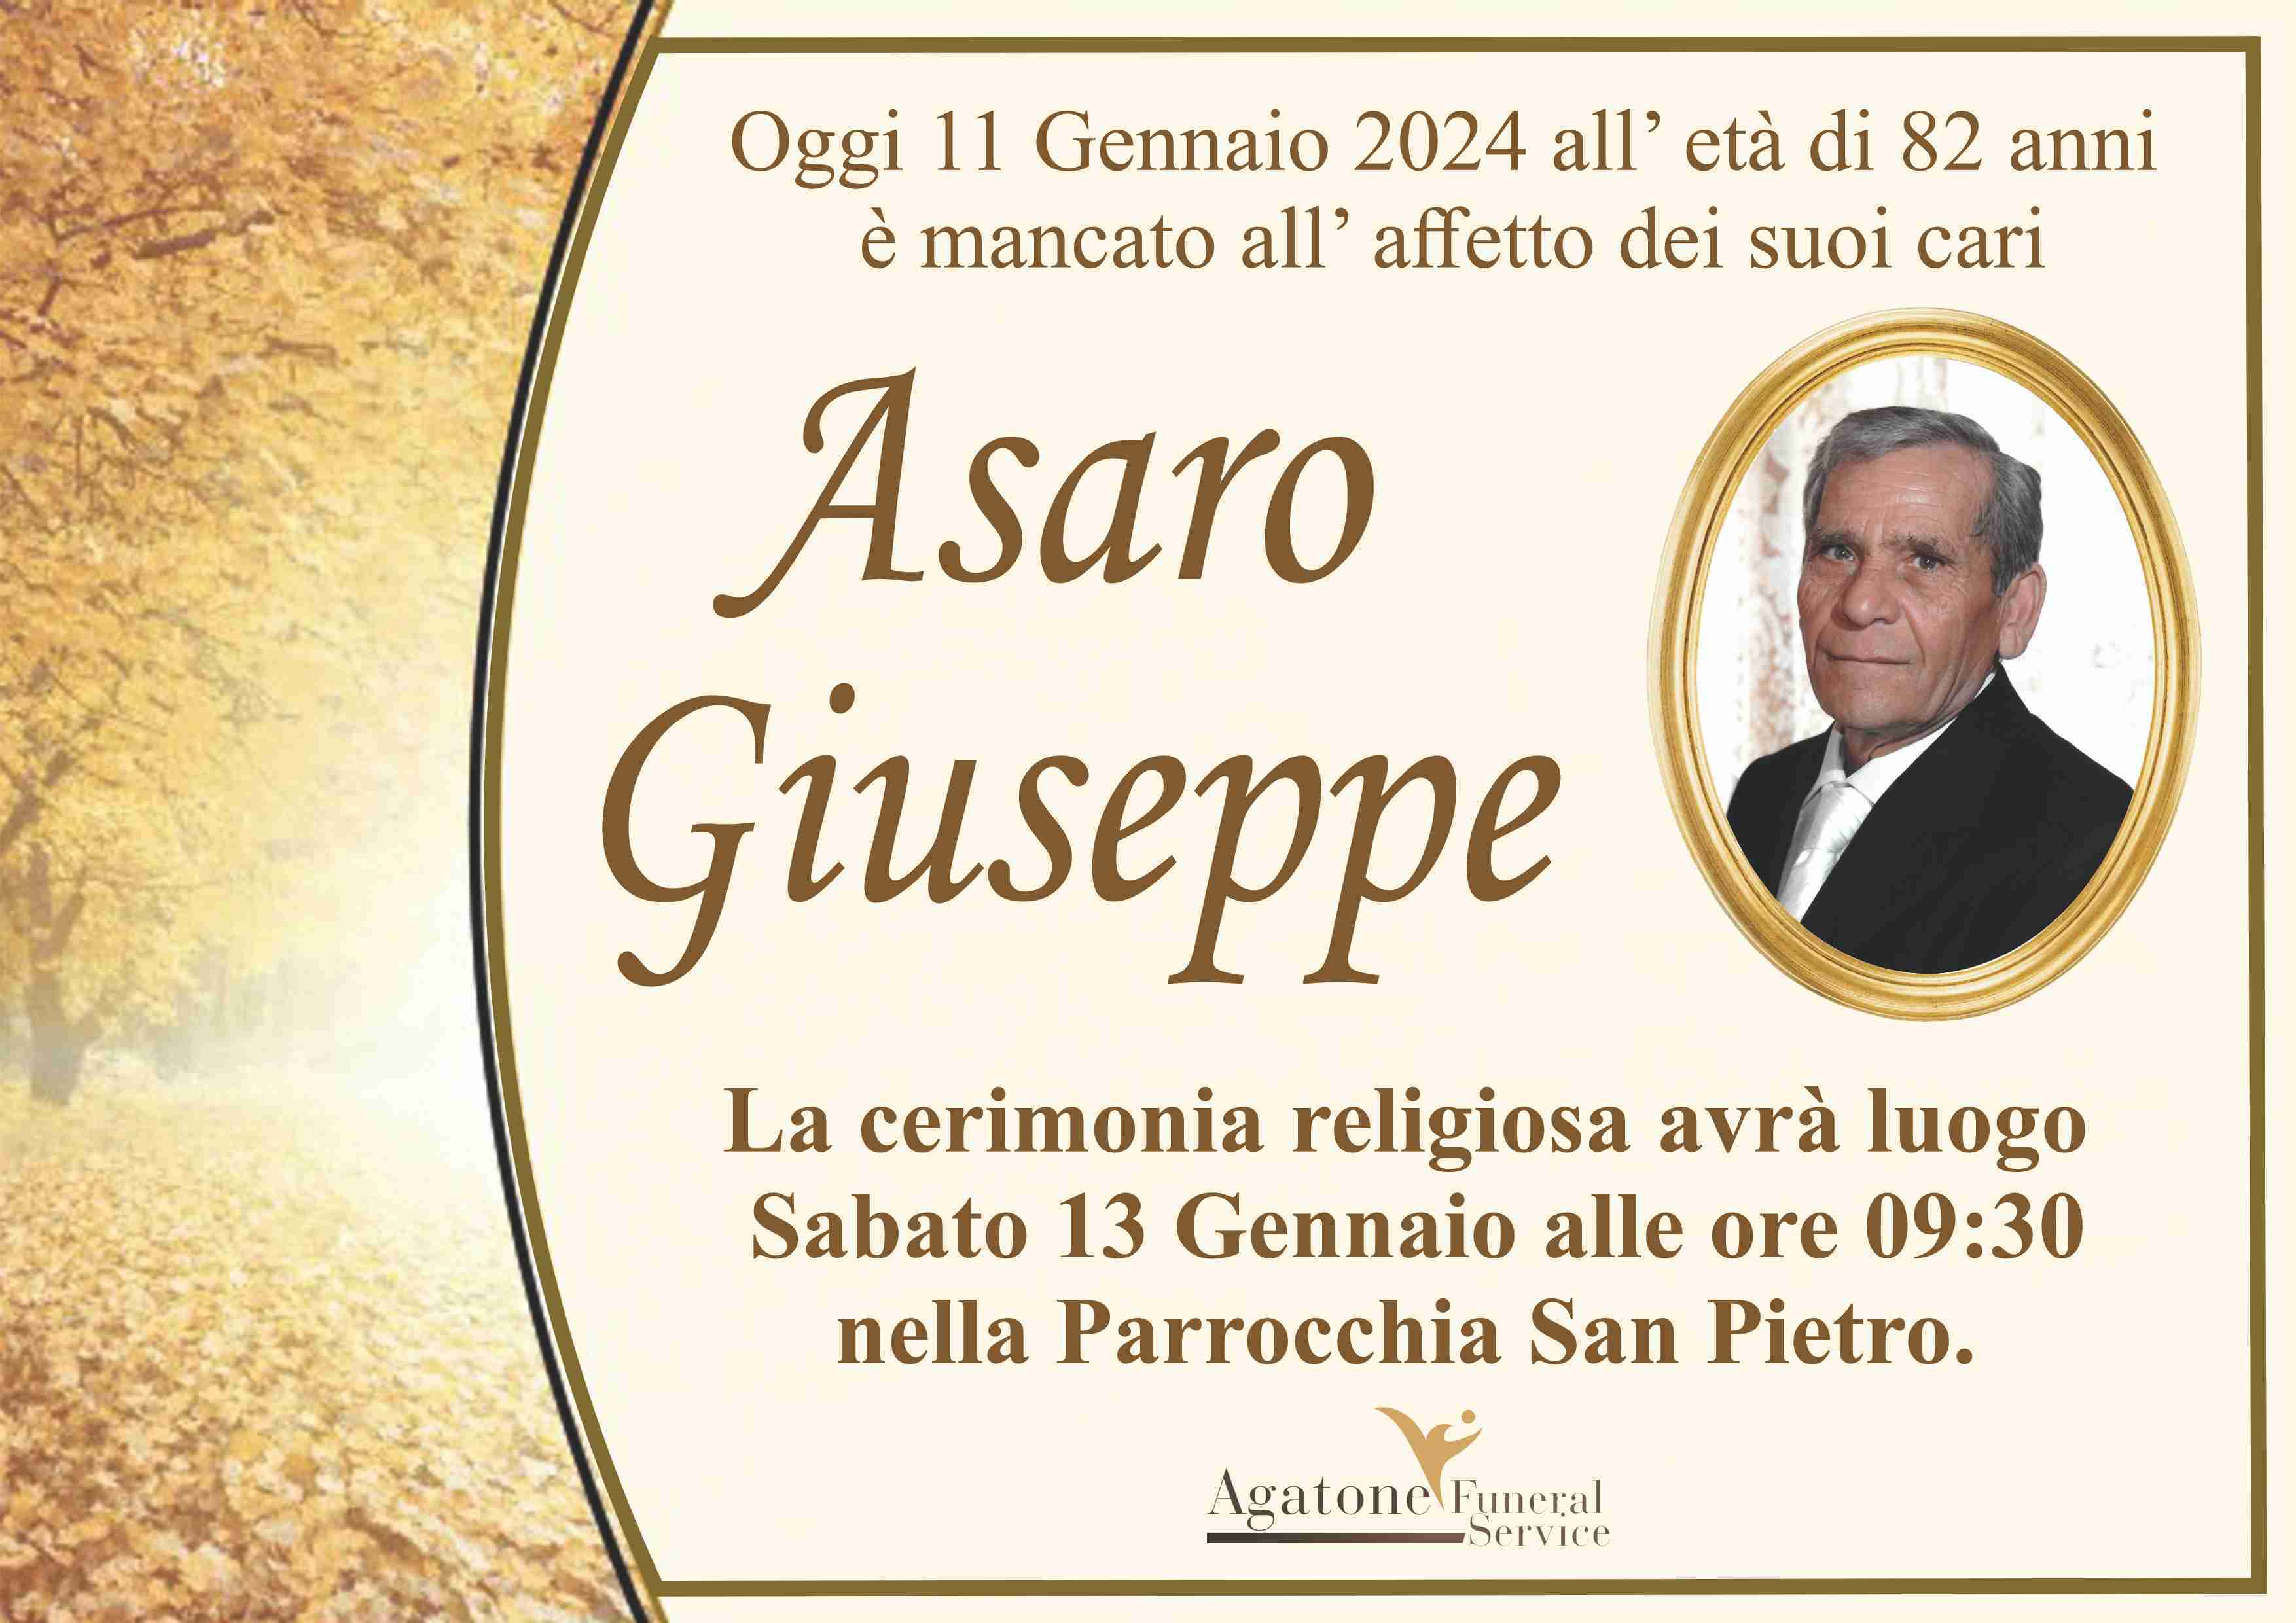 Giuseppe Asaro